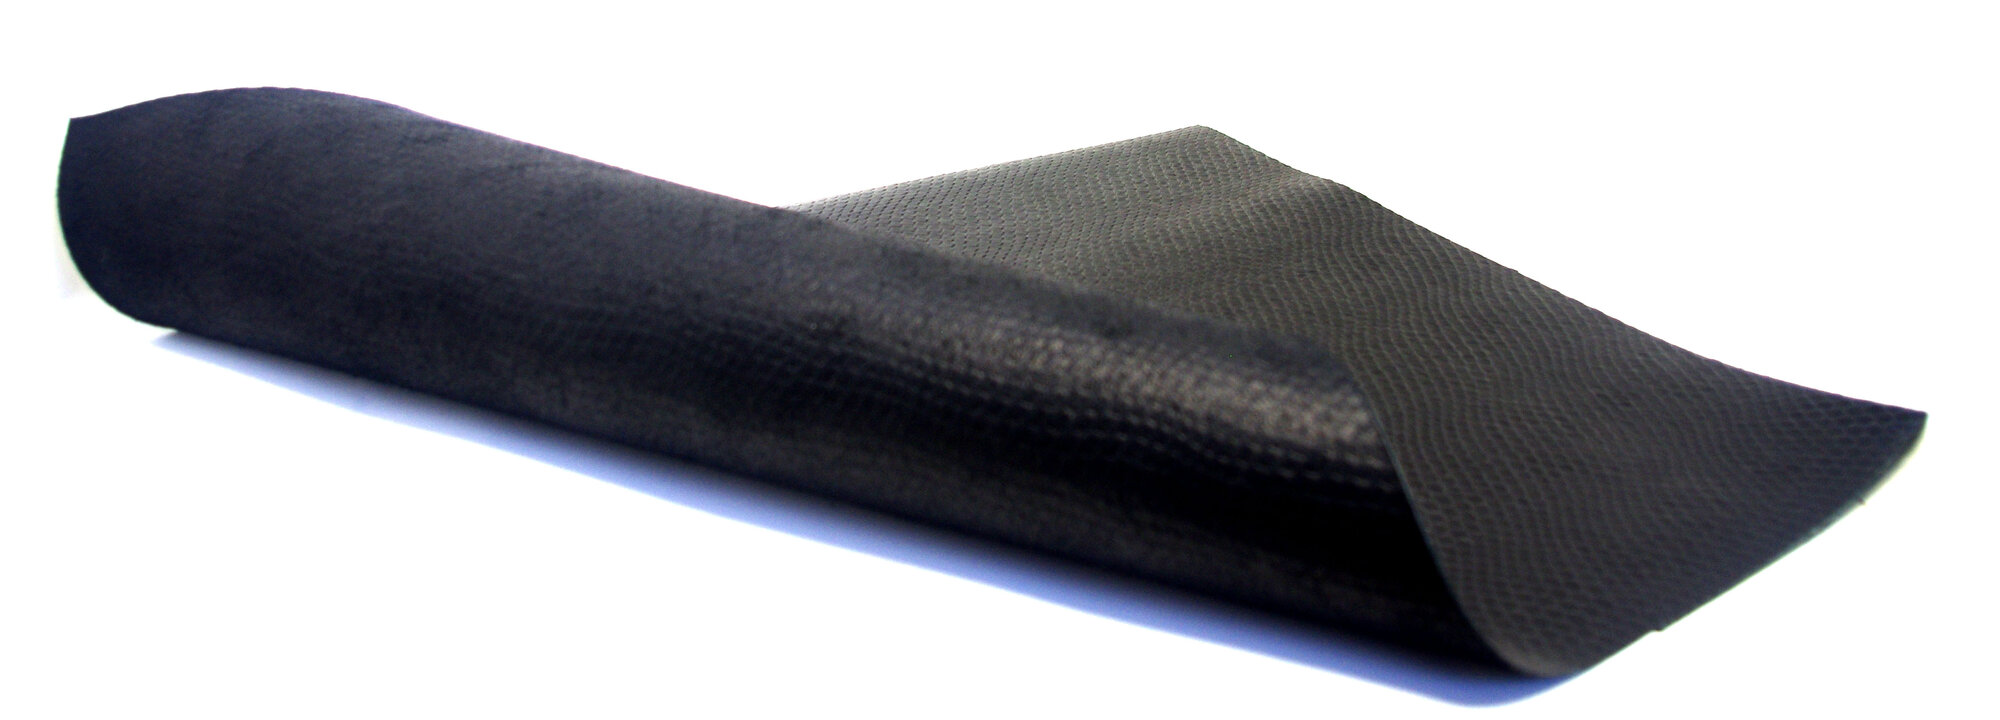 Натуральная итальянская кожа производства Monpel Italia с тиснением - кобра, цвет черный - Формат А3